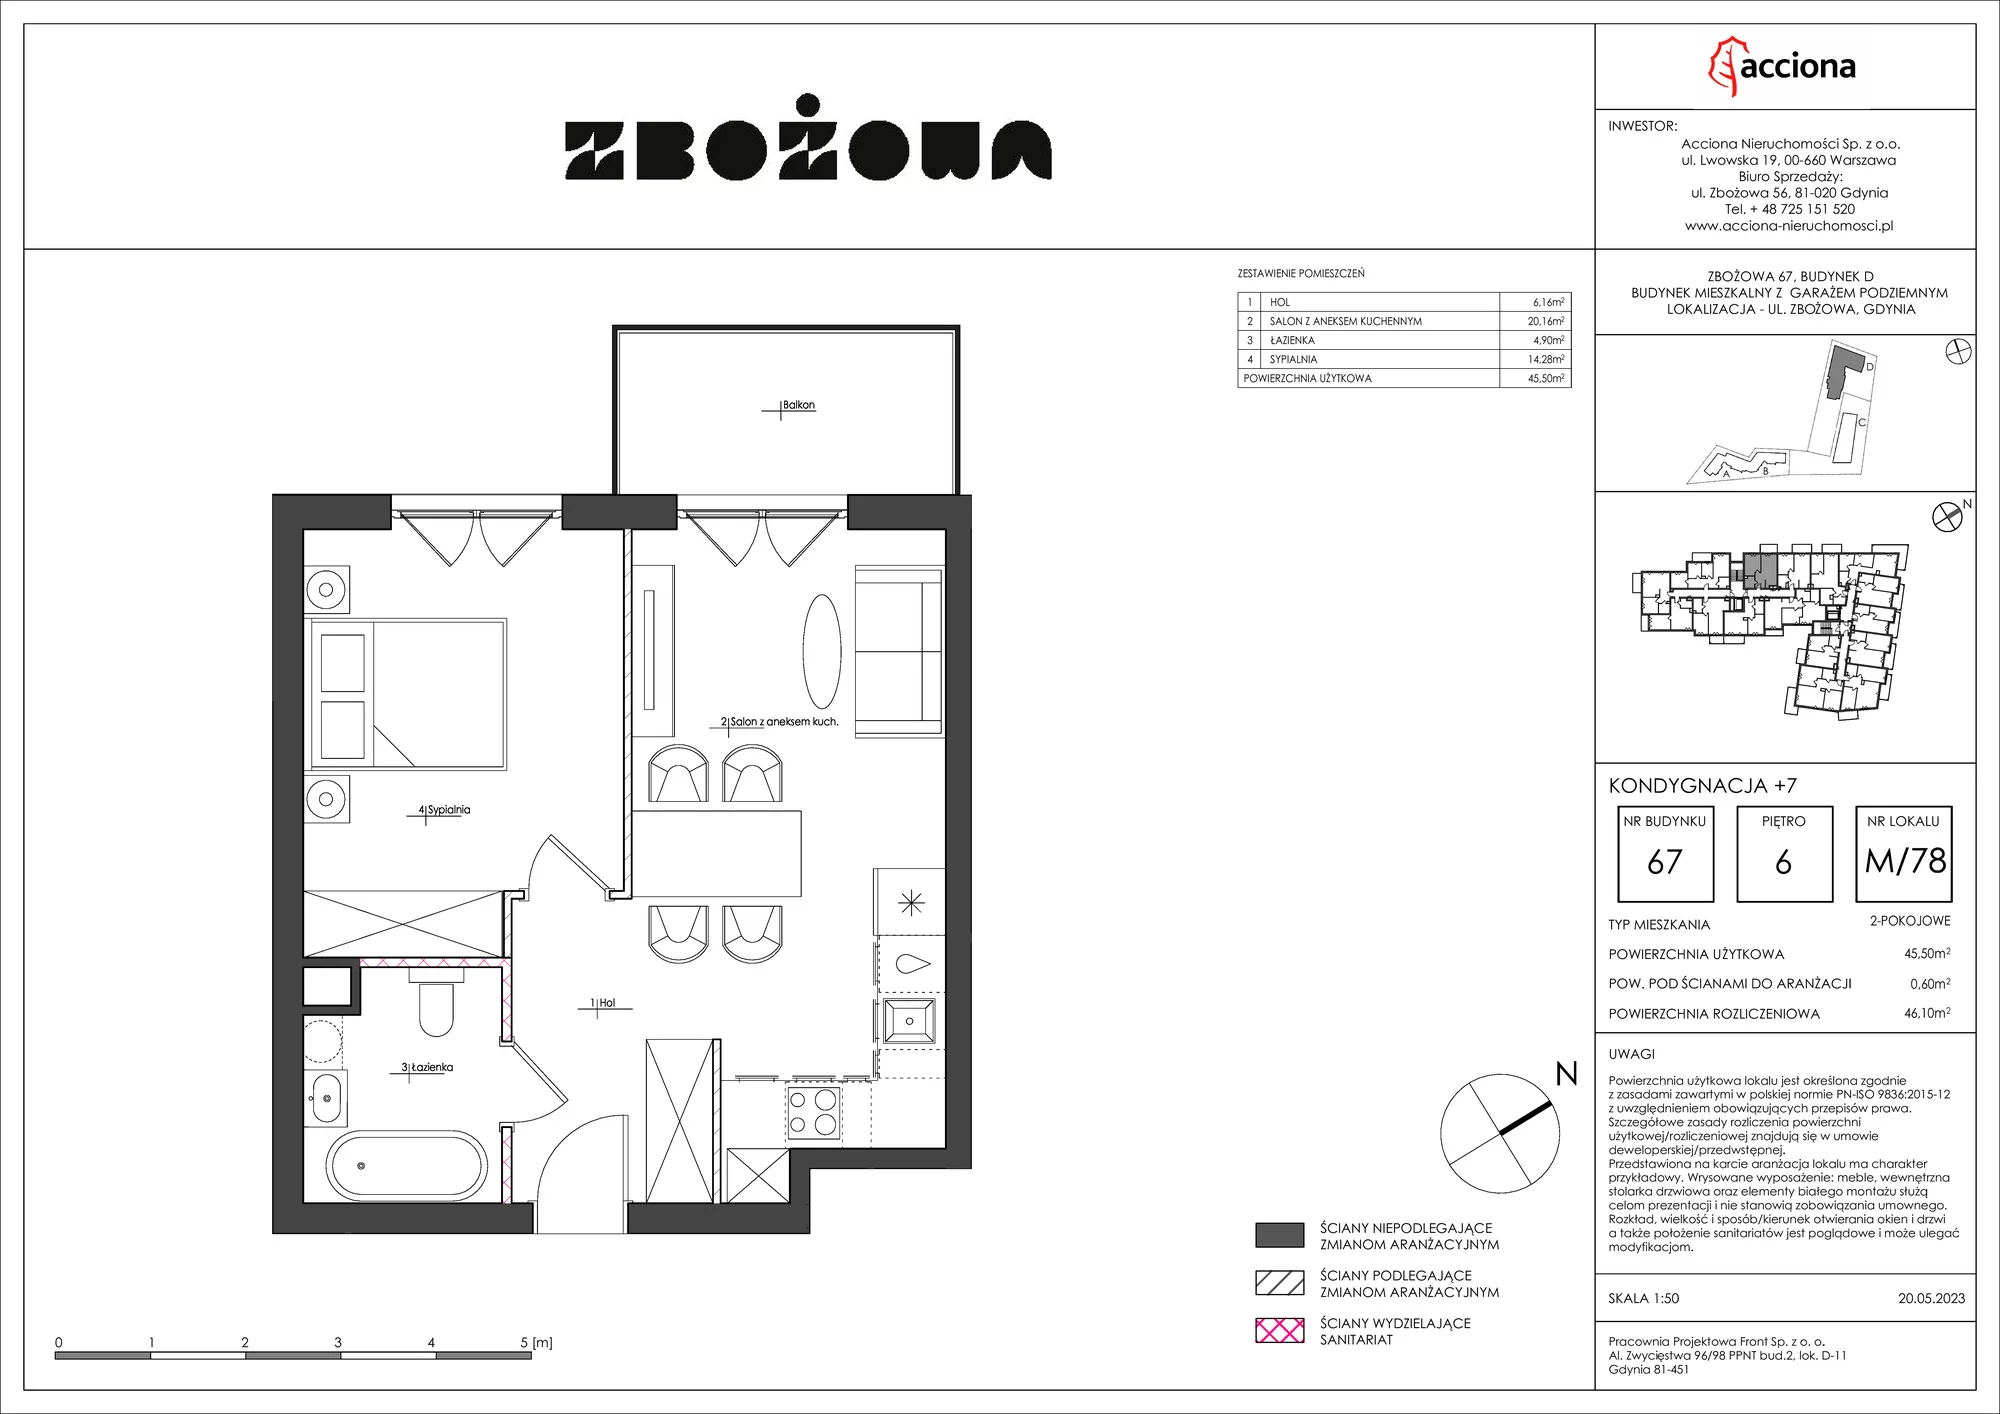 Mieszkanie 46,10 m², piętro 6, oferta nr 67.78, Zbożowa, Gdynia, Cisowa, ul. Zbożowa